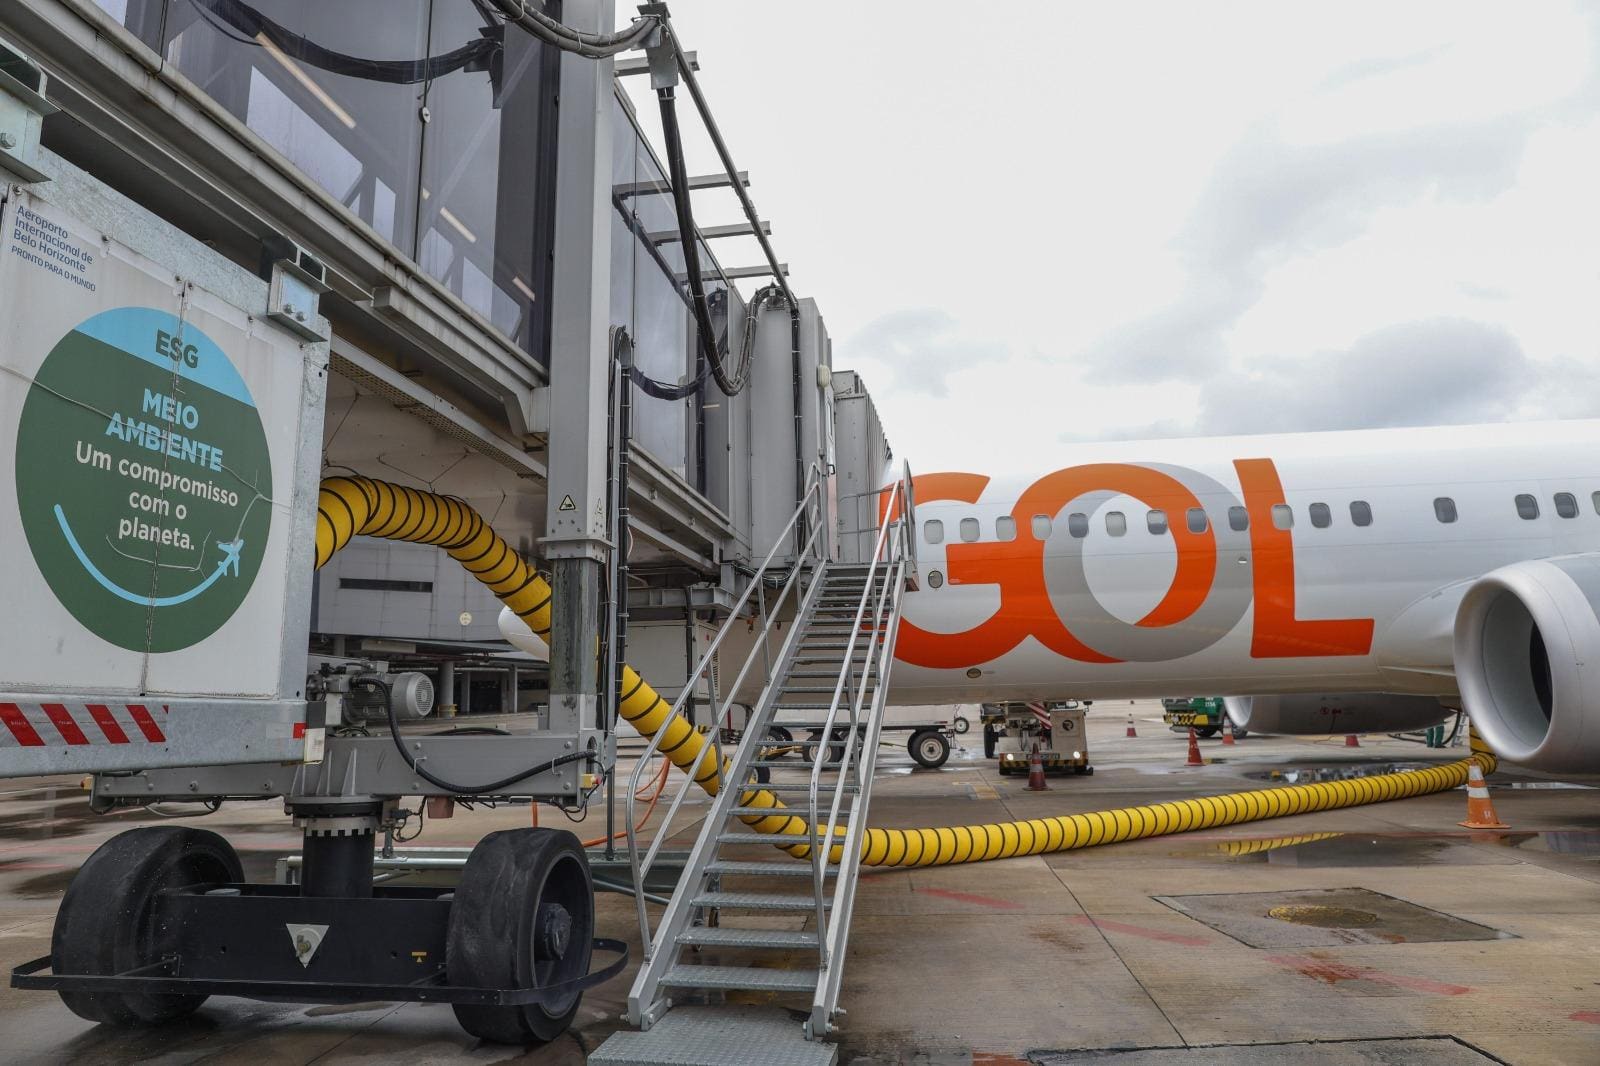 Cada viagem do voo mais frequente da Gol, partindo de BH, emite 8,5 toneladas de CO2